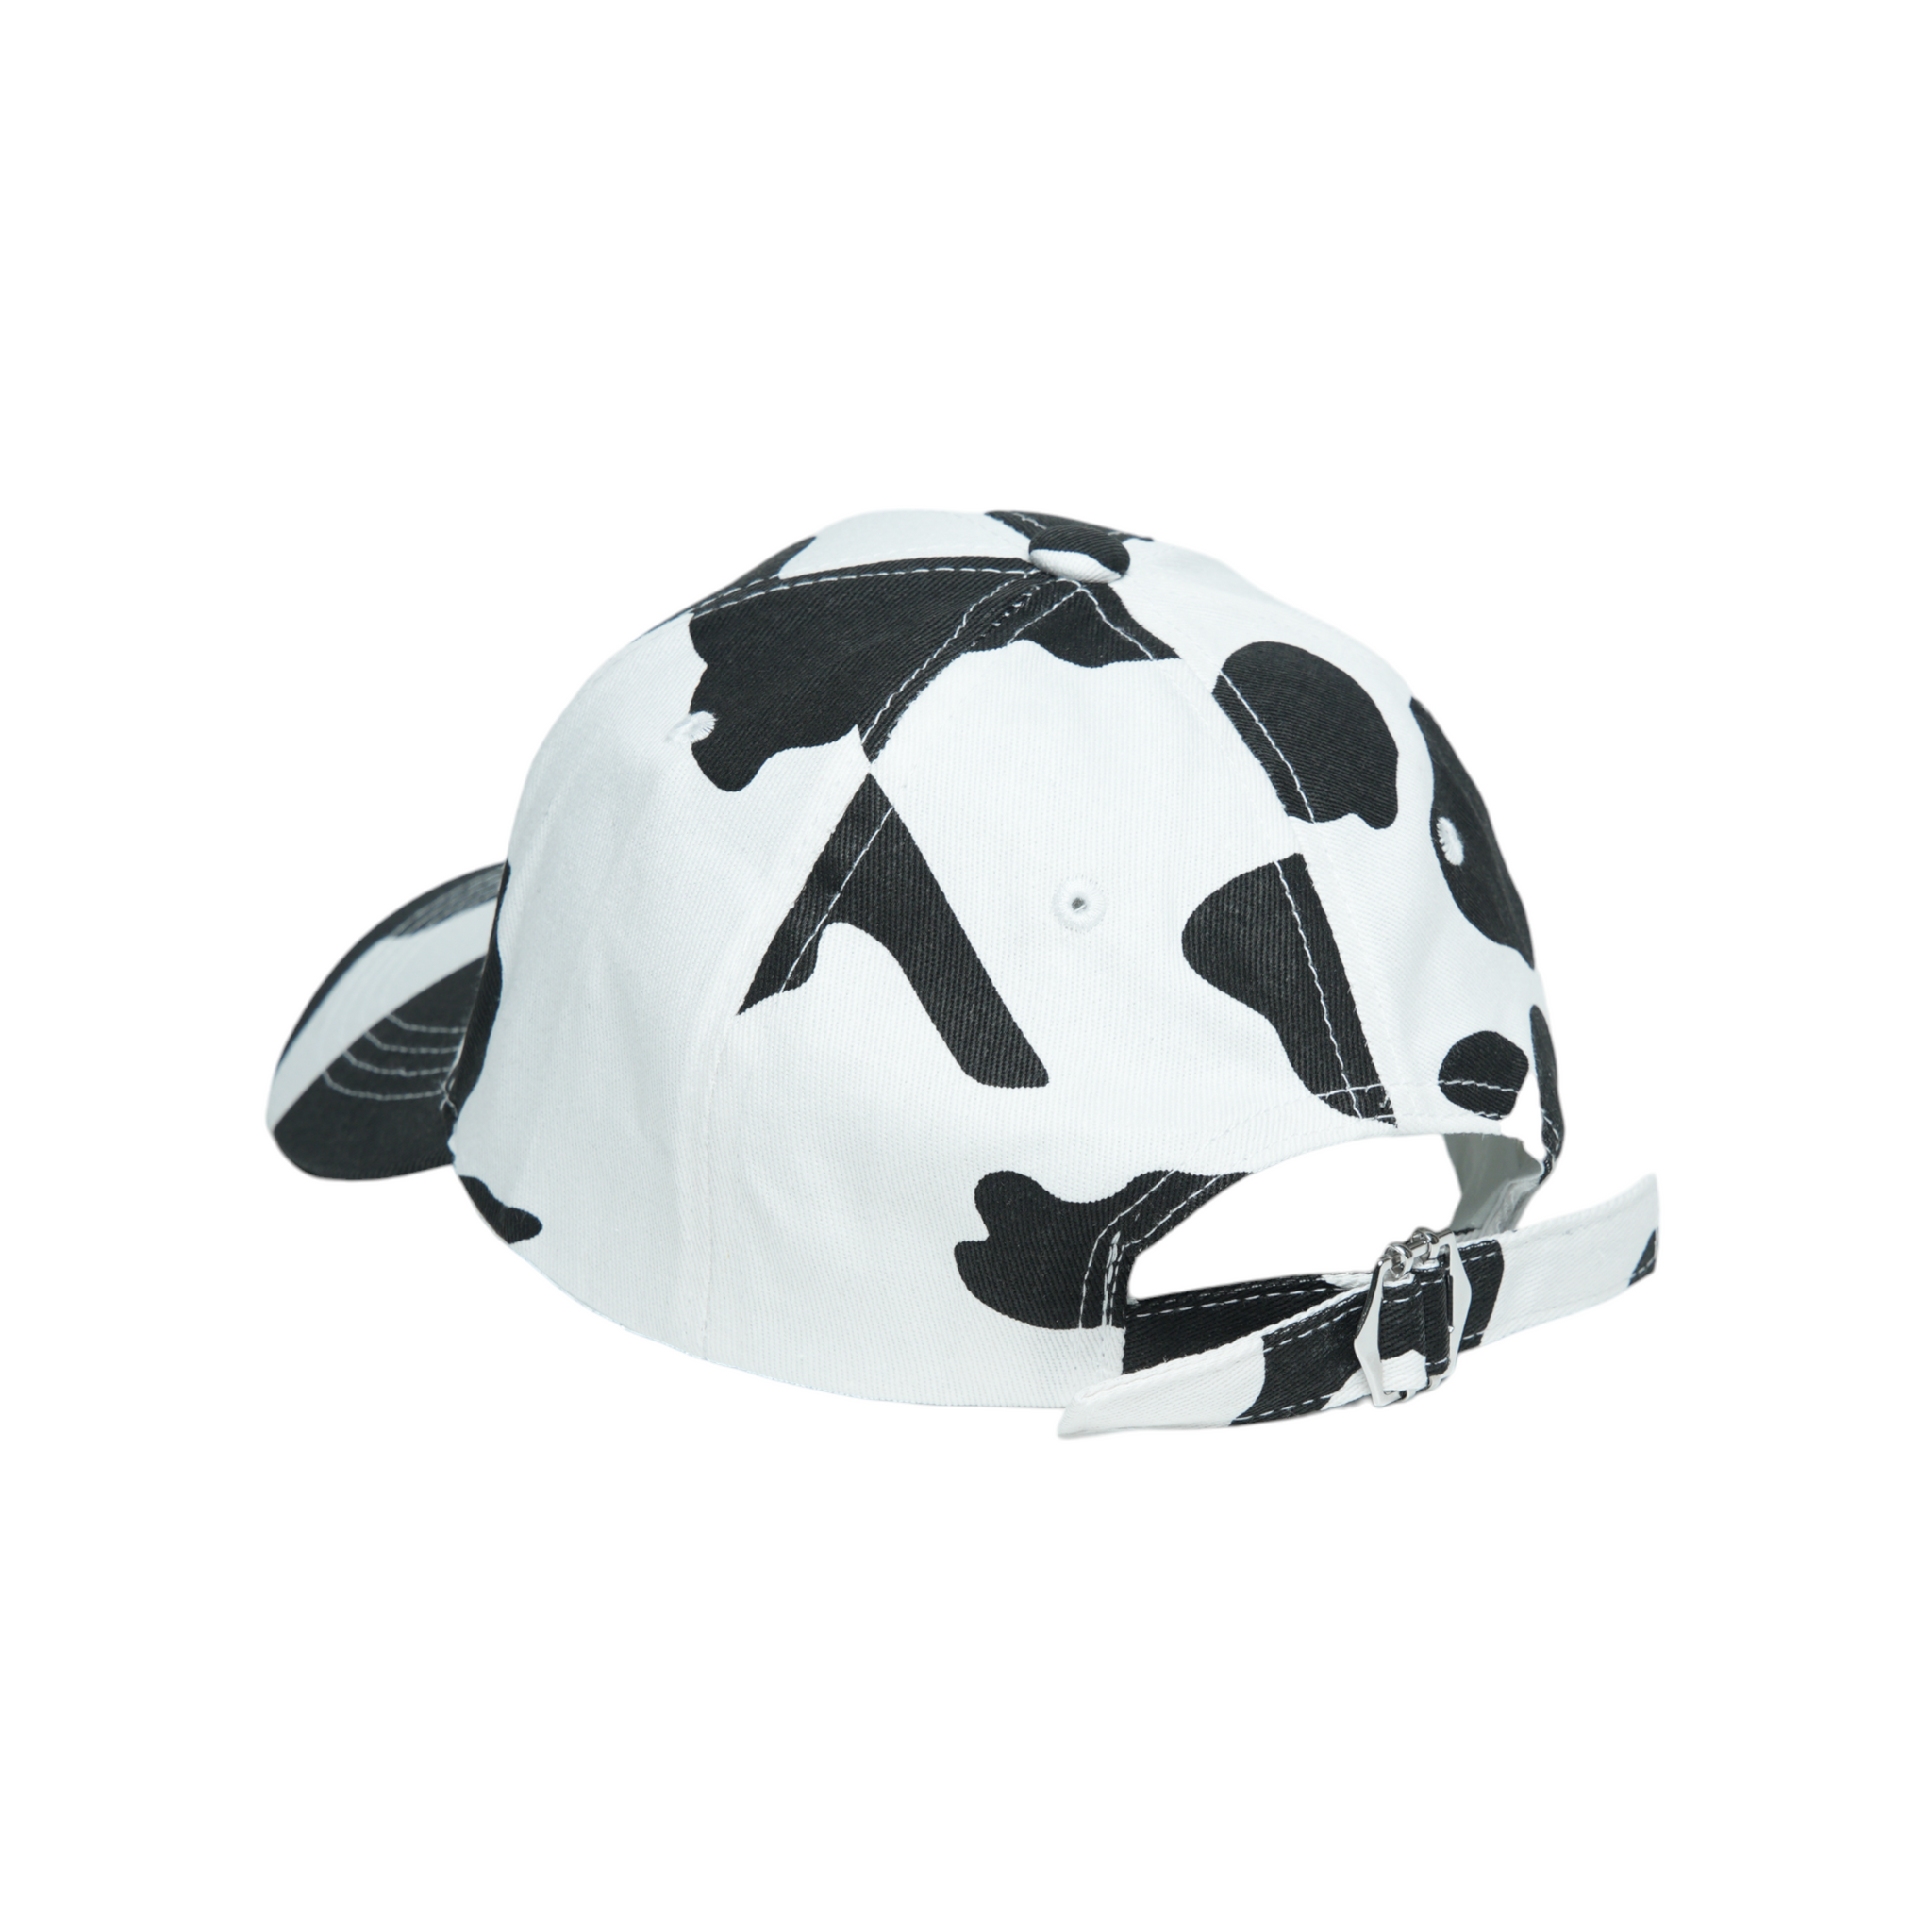 Chokore Cow Print Baseball Cap (White)